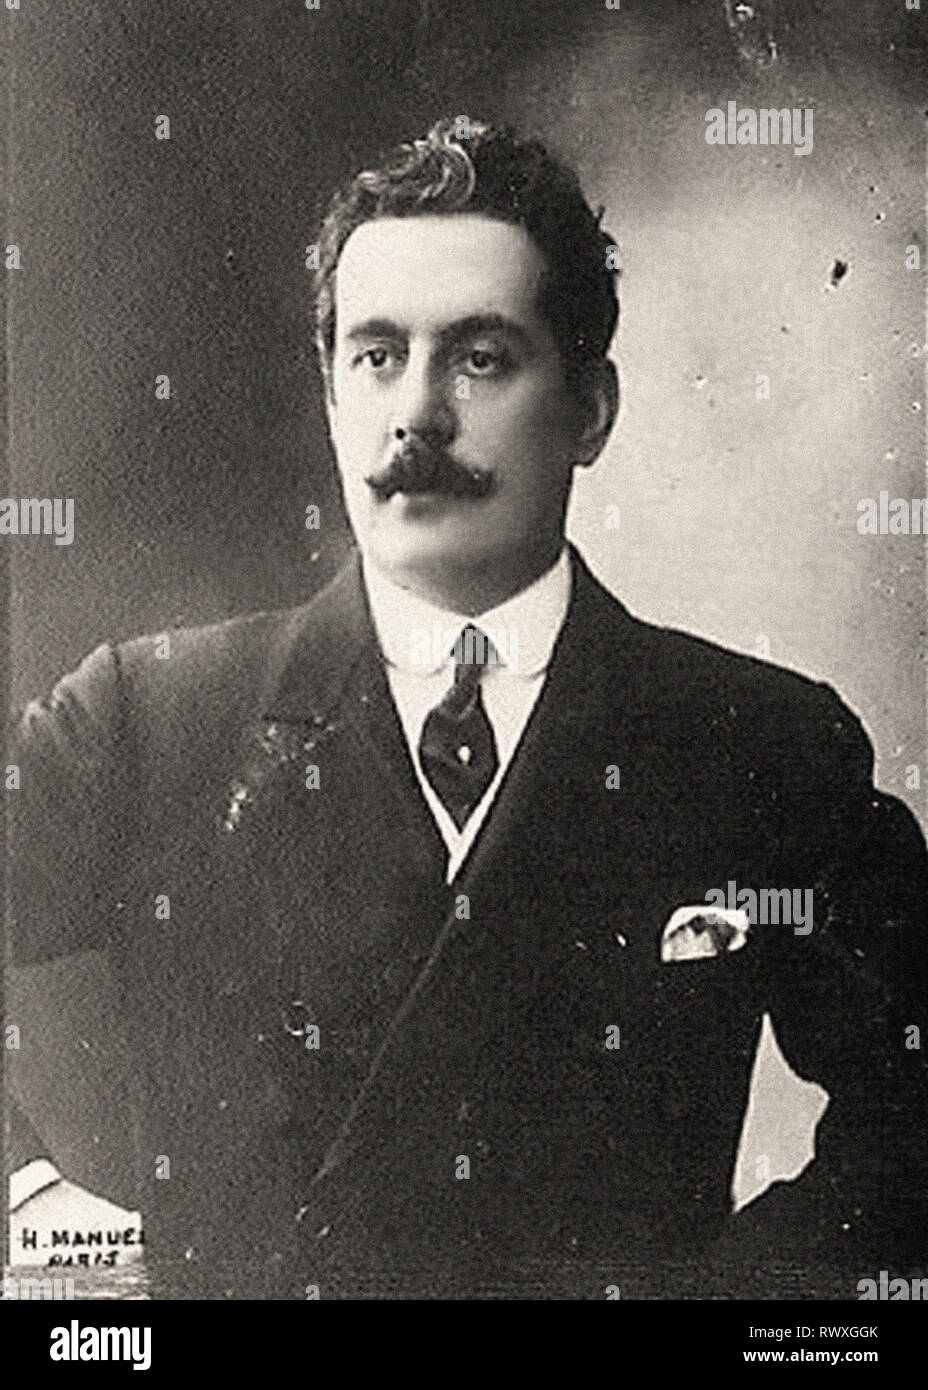 Ritratto fotografico di Puccini Foto Stock